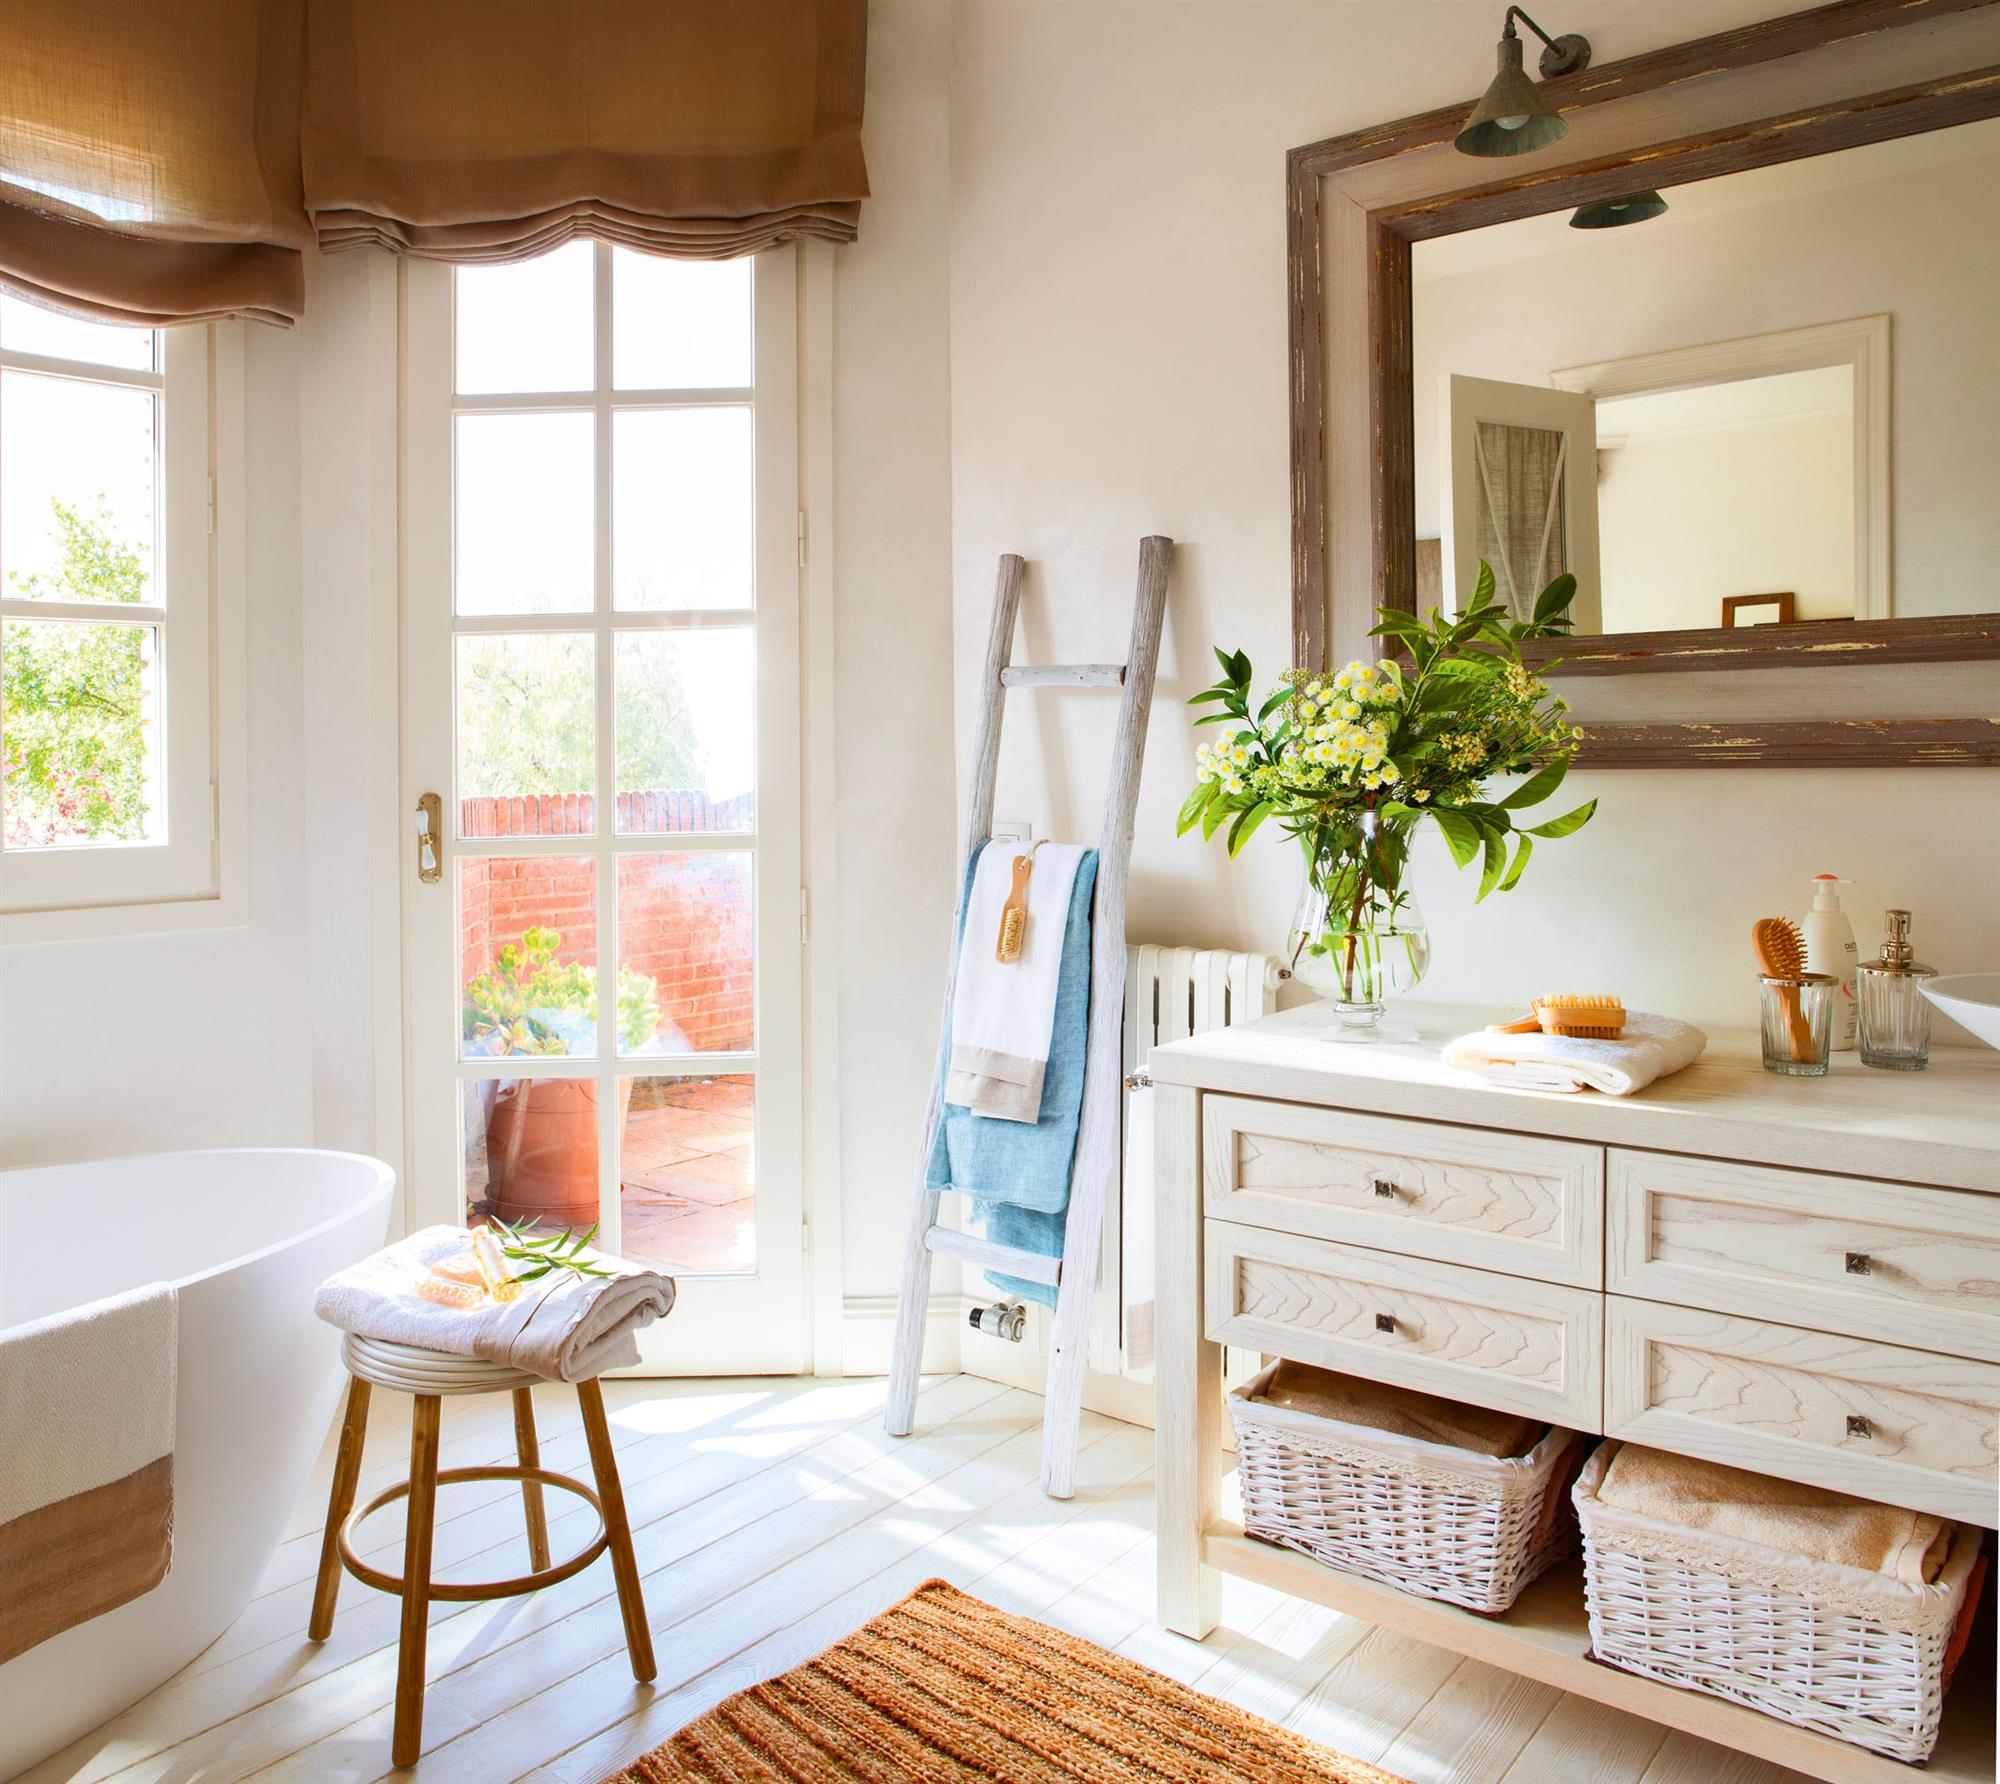 Baño con mueble blanco, bañera ovalada, escalera toallero tapando el radiador.